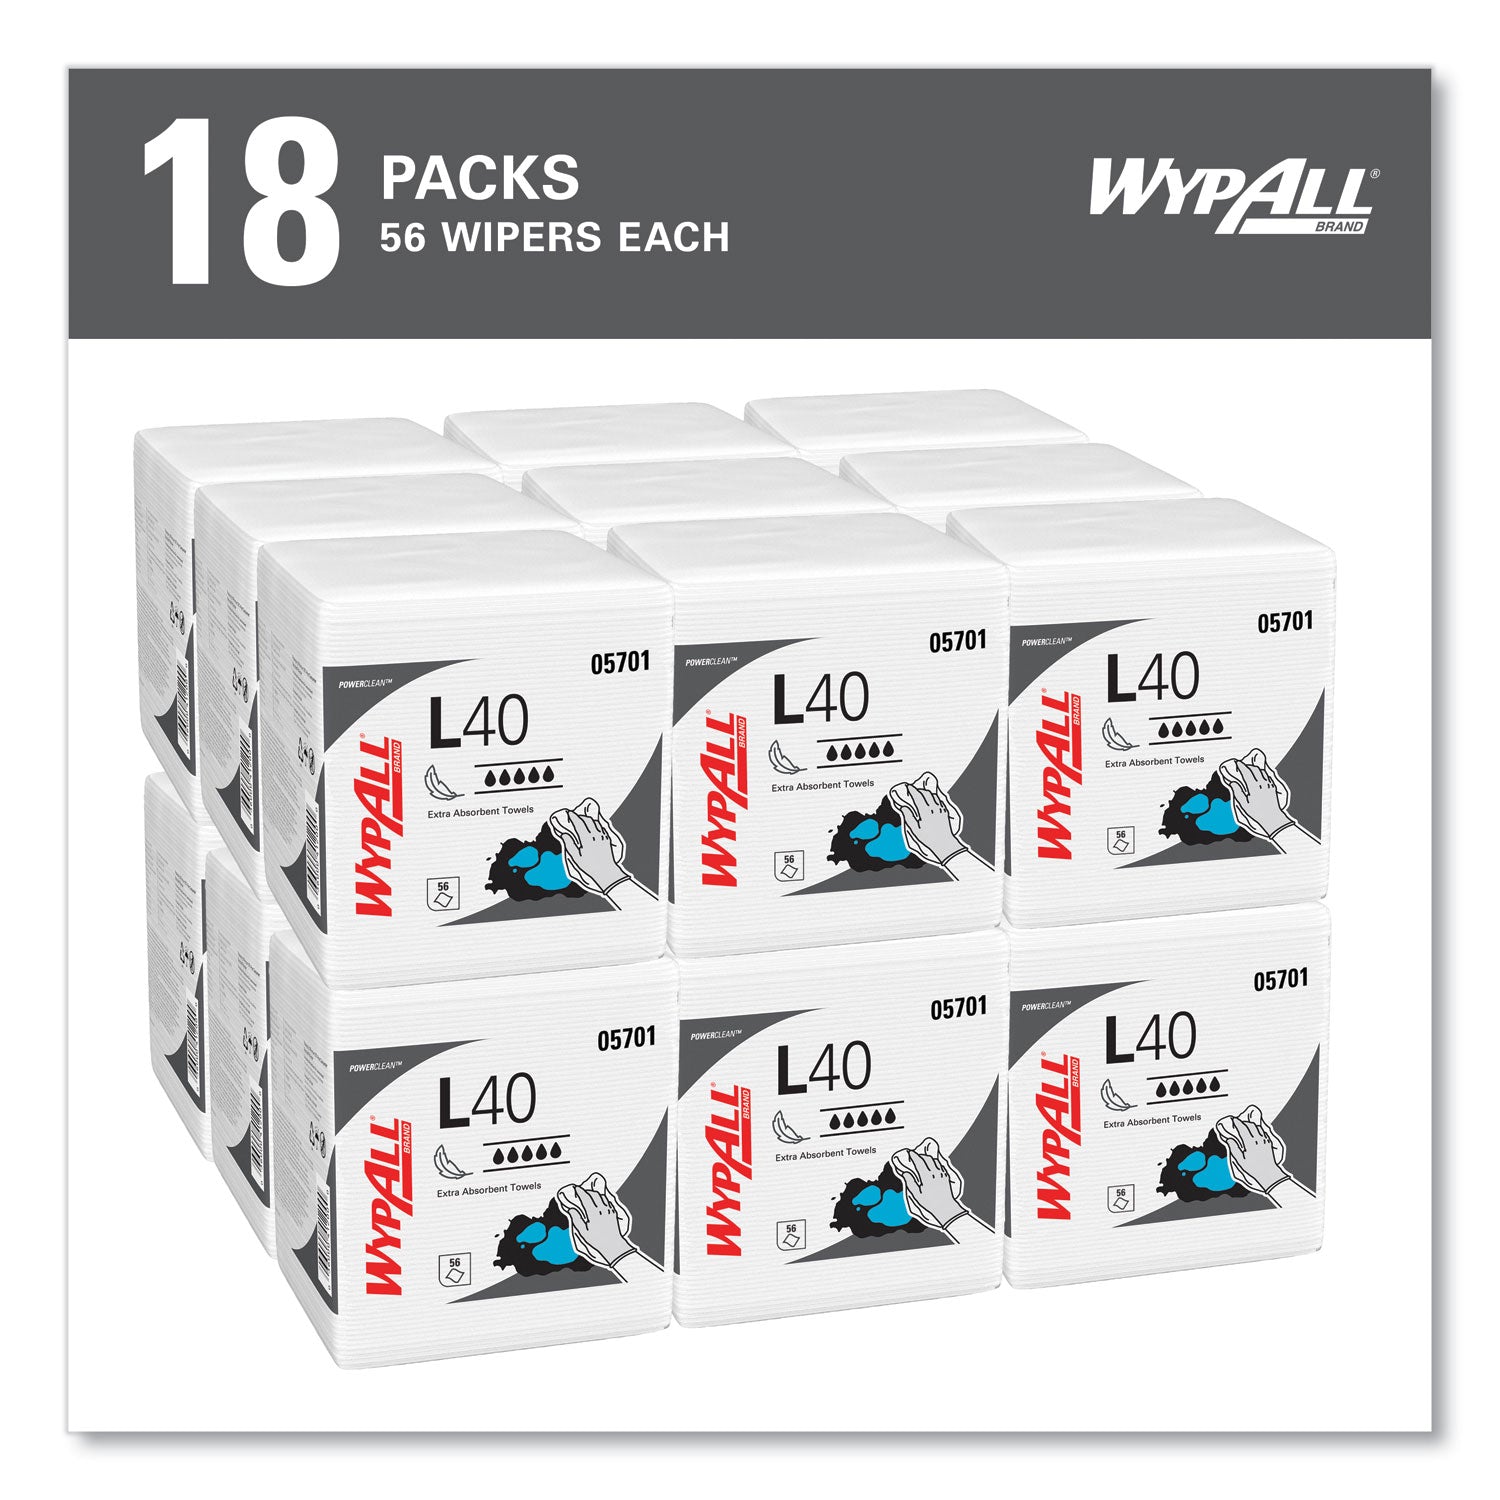 L40 Towels, 1/4 Fold, 12.5 x 12, White, 56/Box, 18 Packs/Carton - 